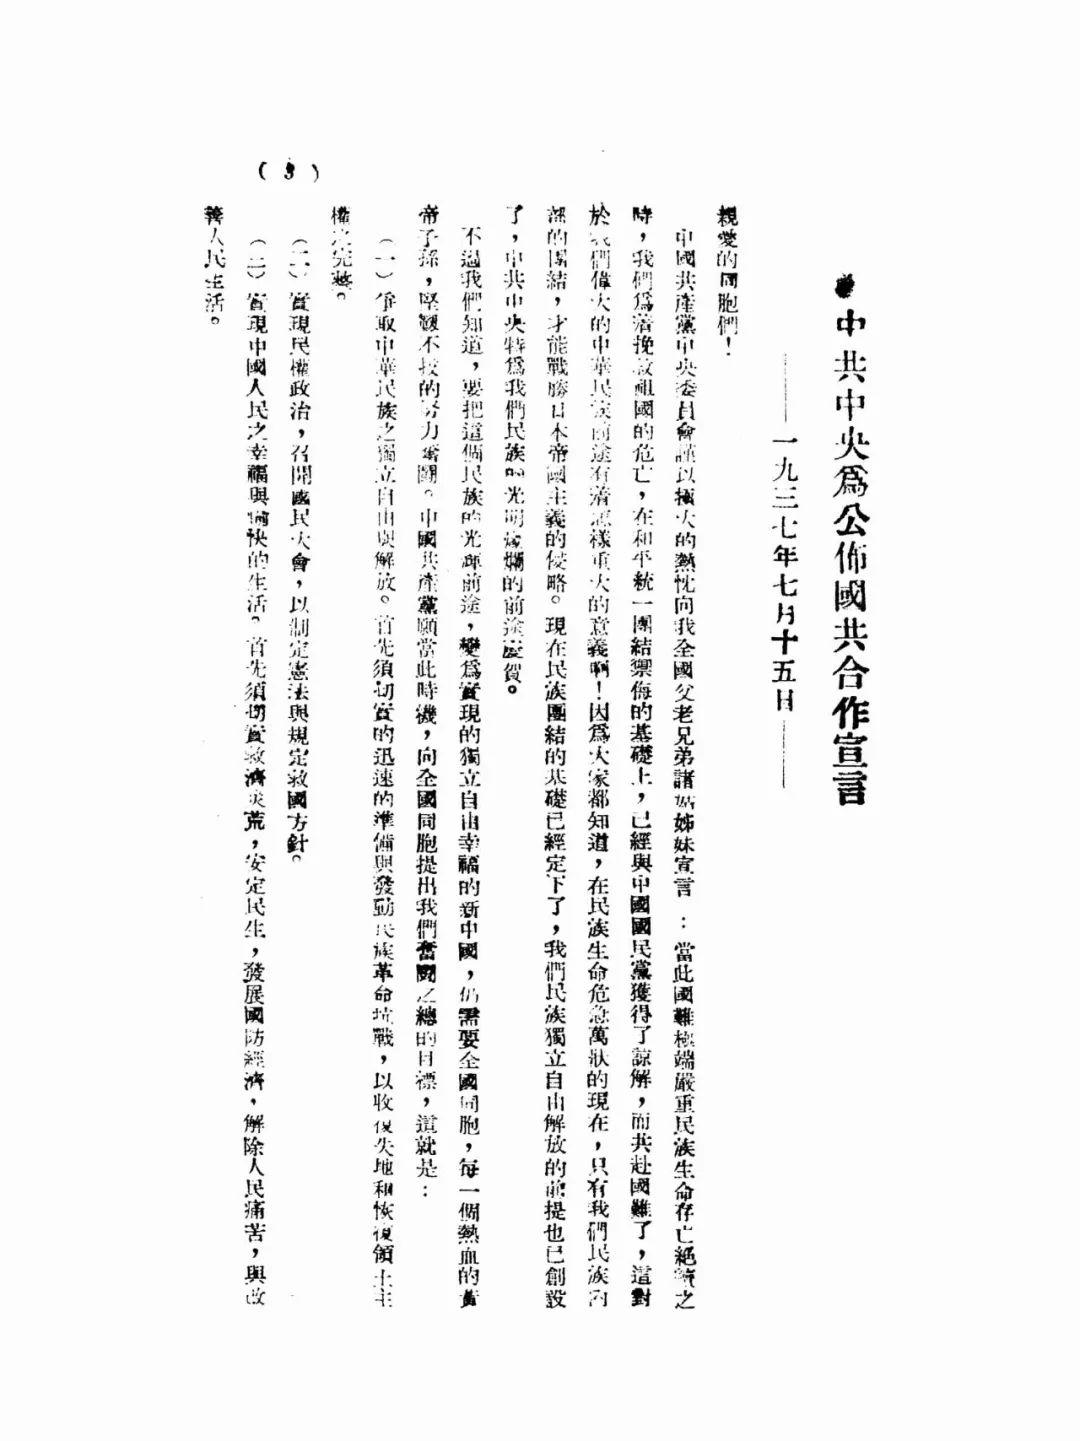 【特刊】《中国抗日战争史》精彩内容抢先看之二——红军改编与国共两党的战略分工